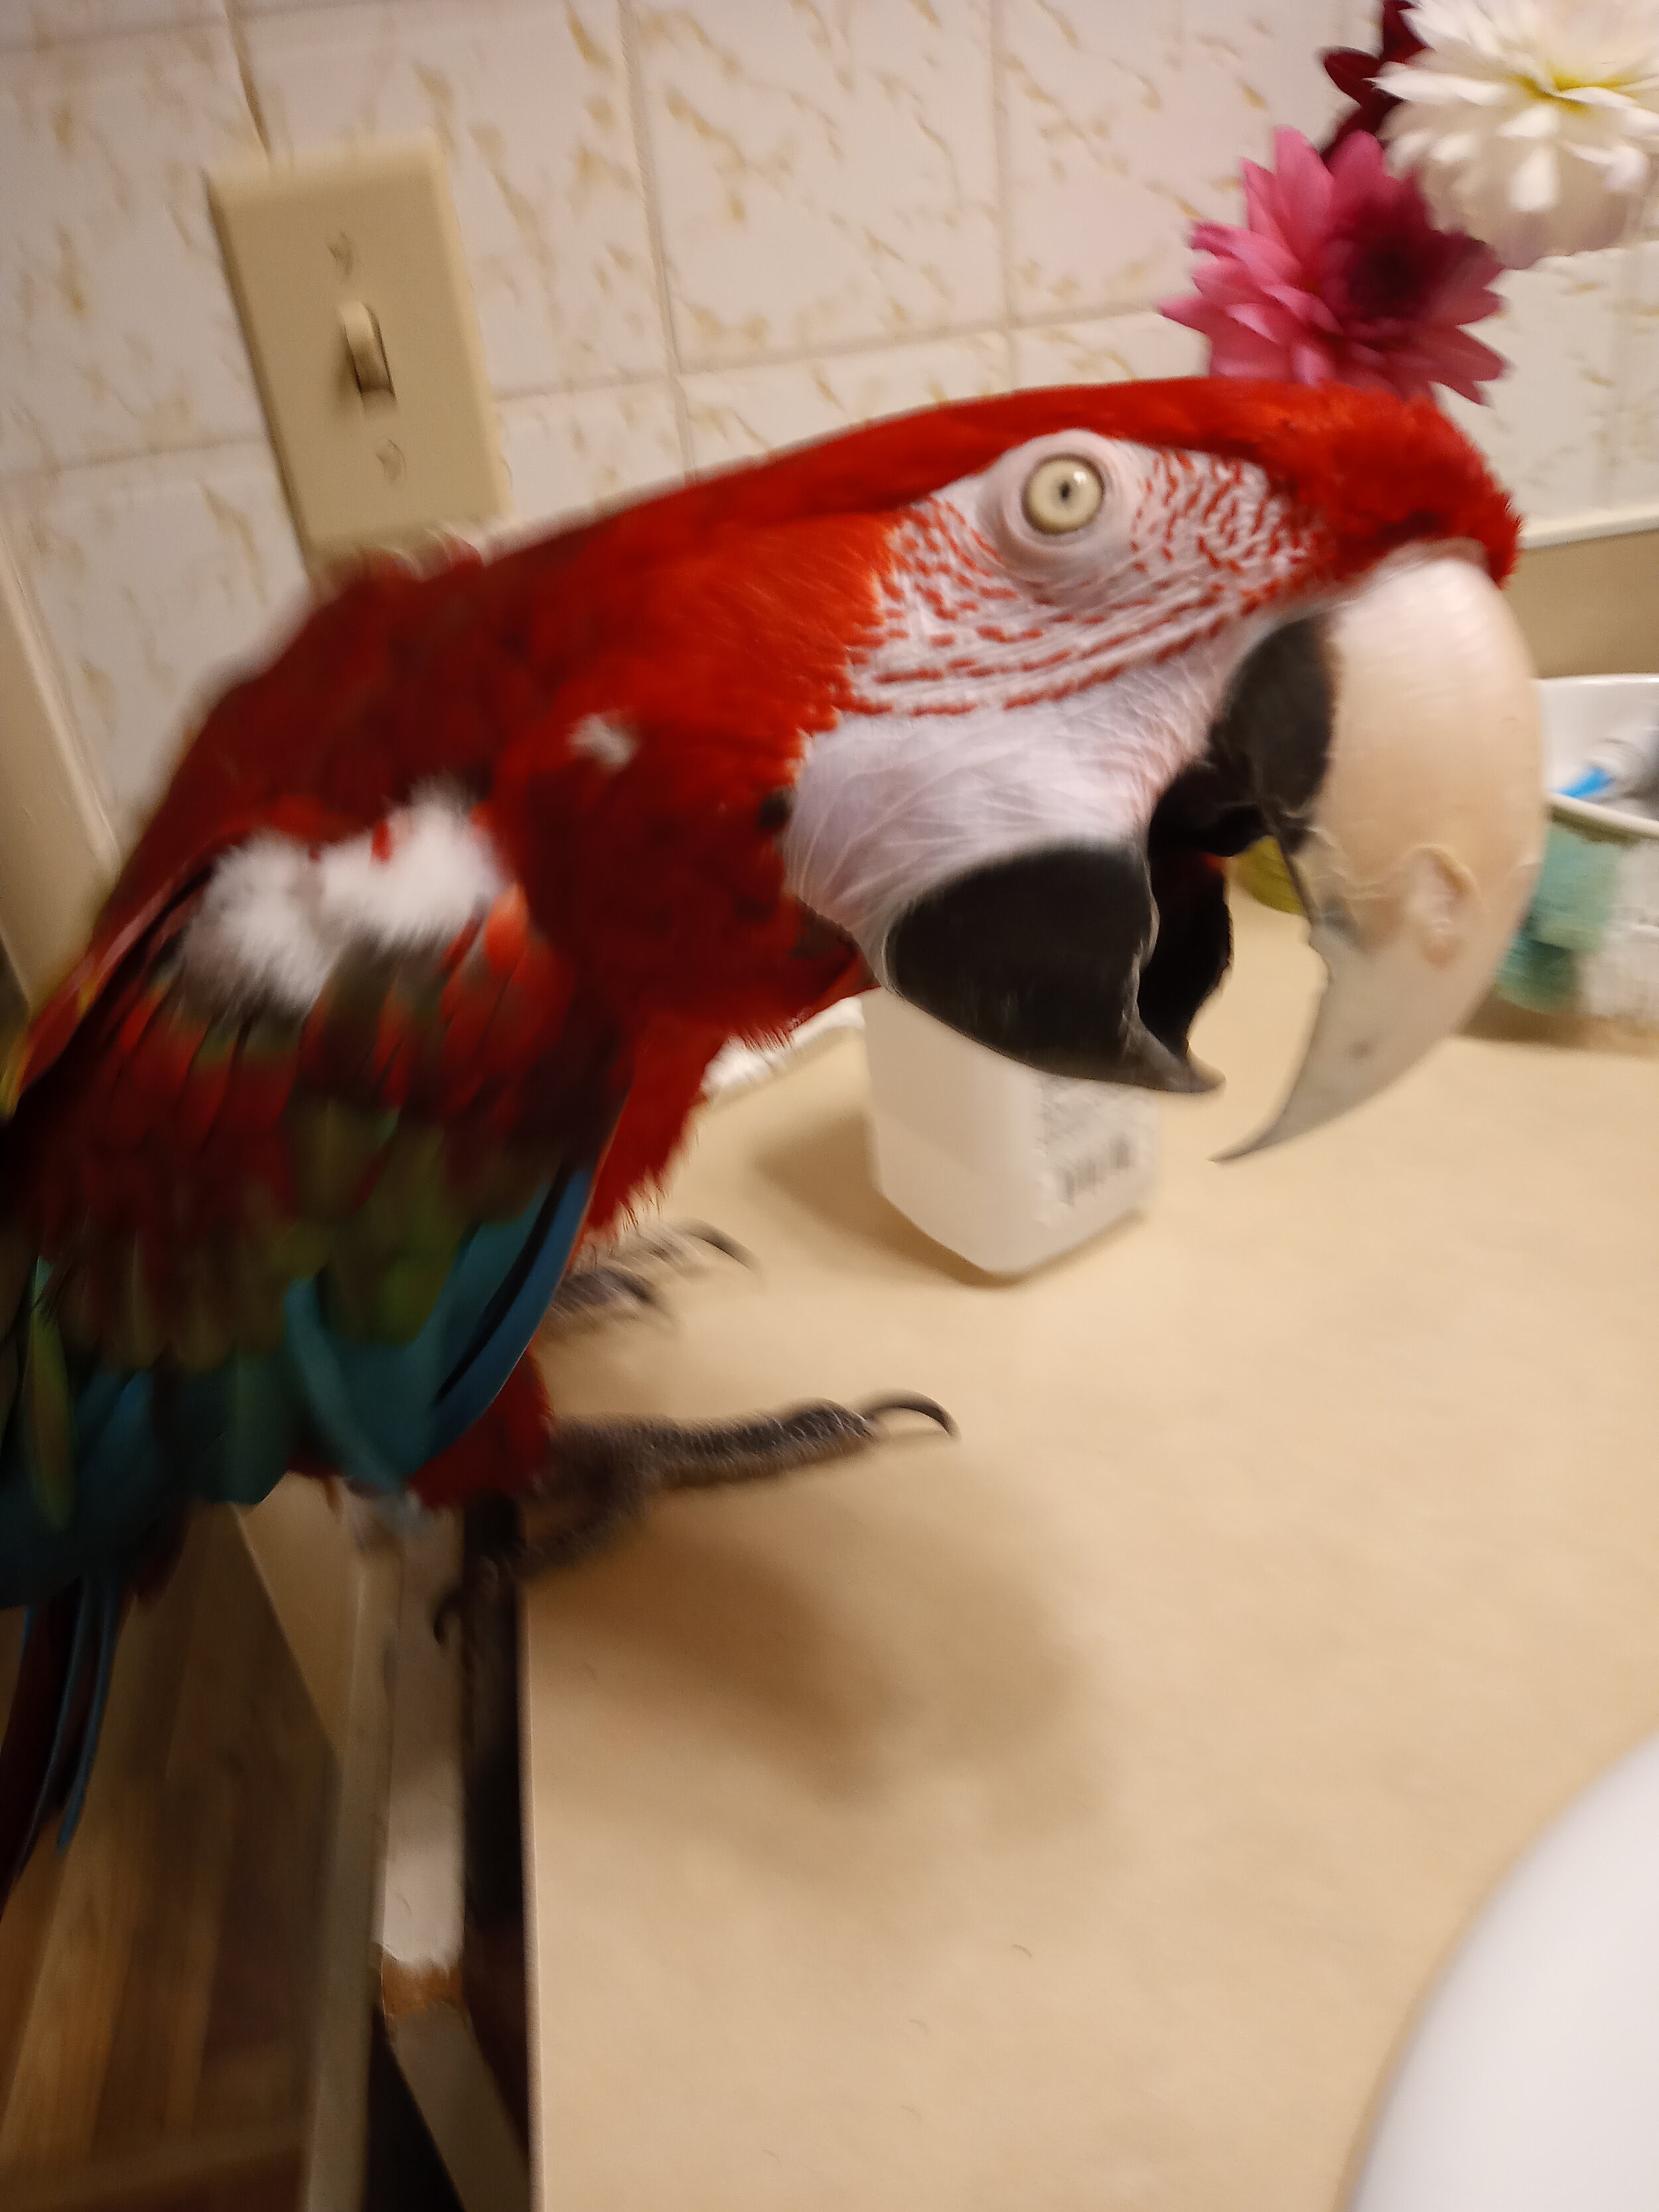 Parrot gets a pedicure! 💅🏻🦜 #parrot #parrotsoftiktok #parrots #parr... |  birds | TikTok